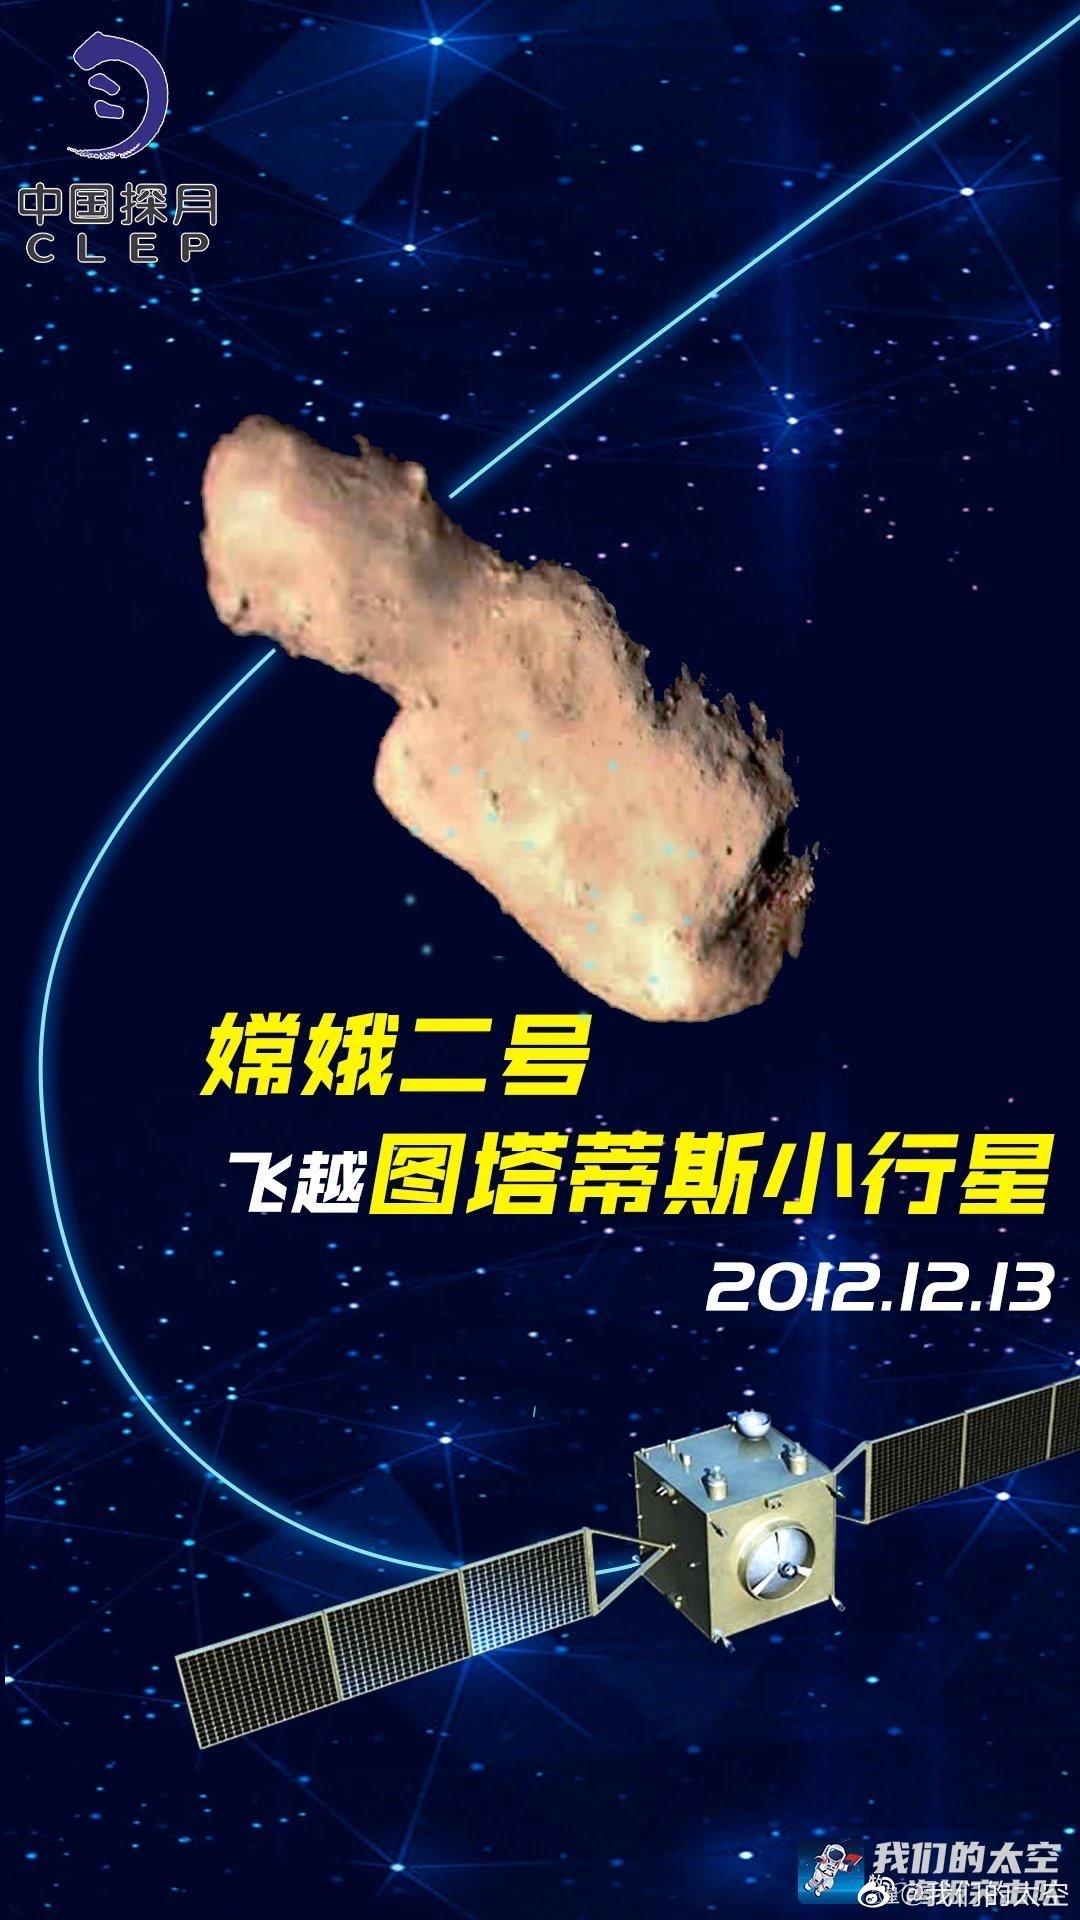 中國「嫦娥三號」在月球表面着陸 | 當年今日 | 通識中國 | 當代中國